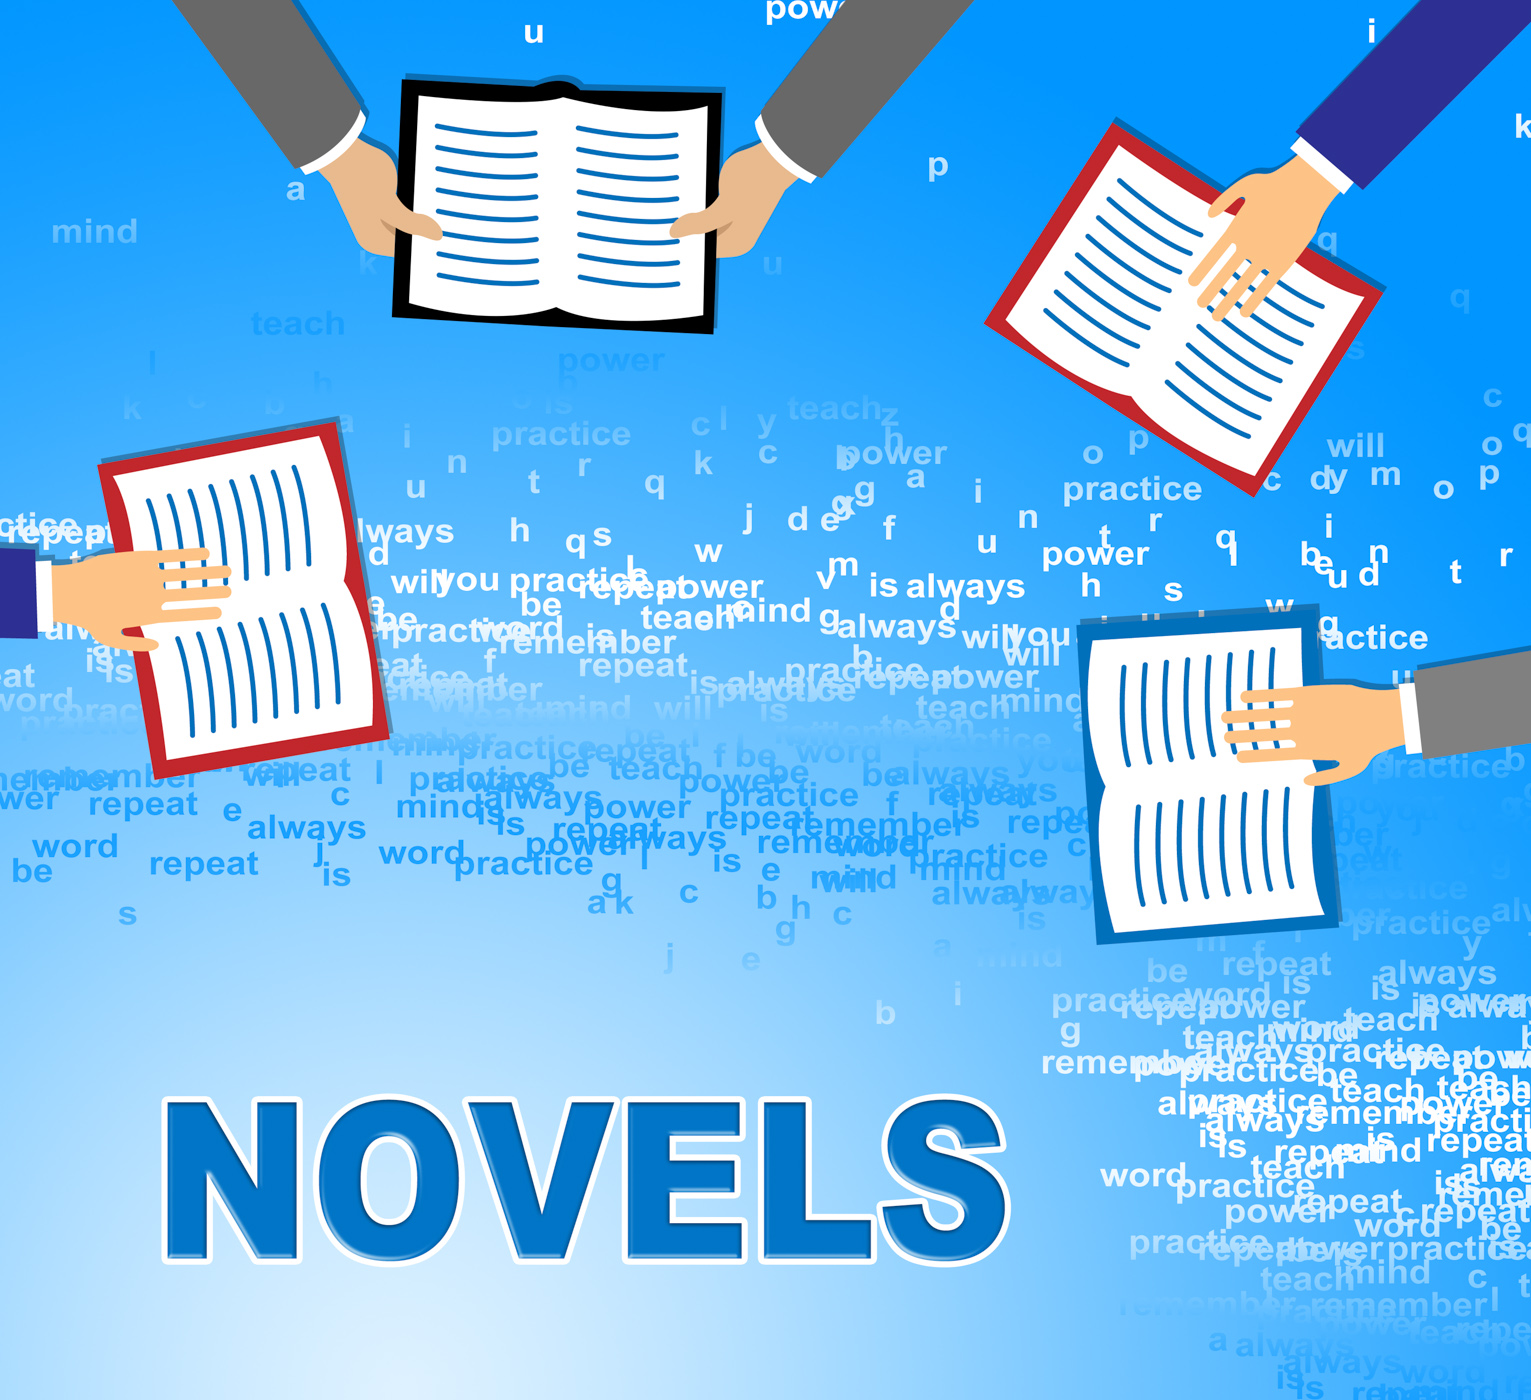 Novels books indicates story telling and fiction photo